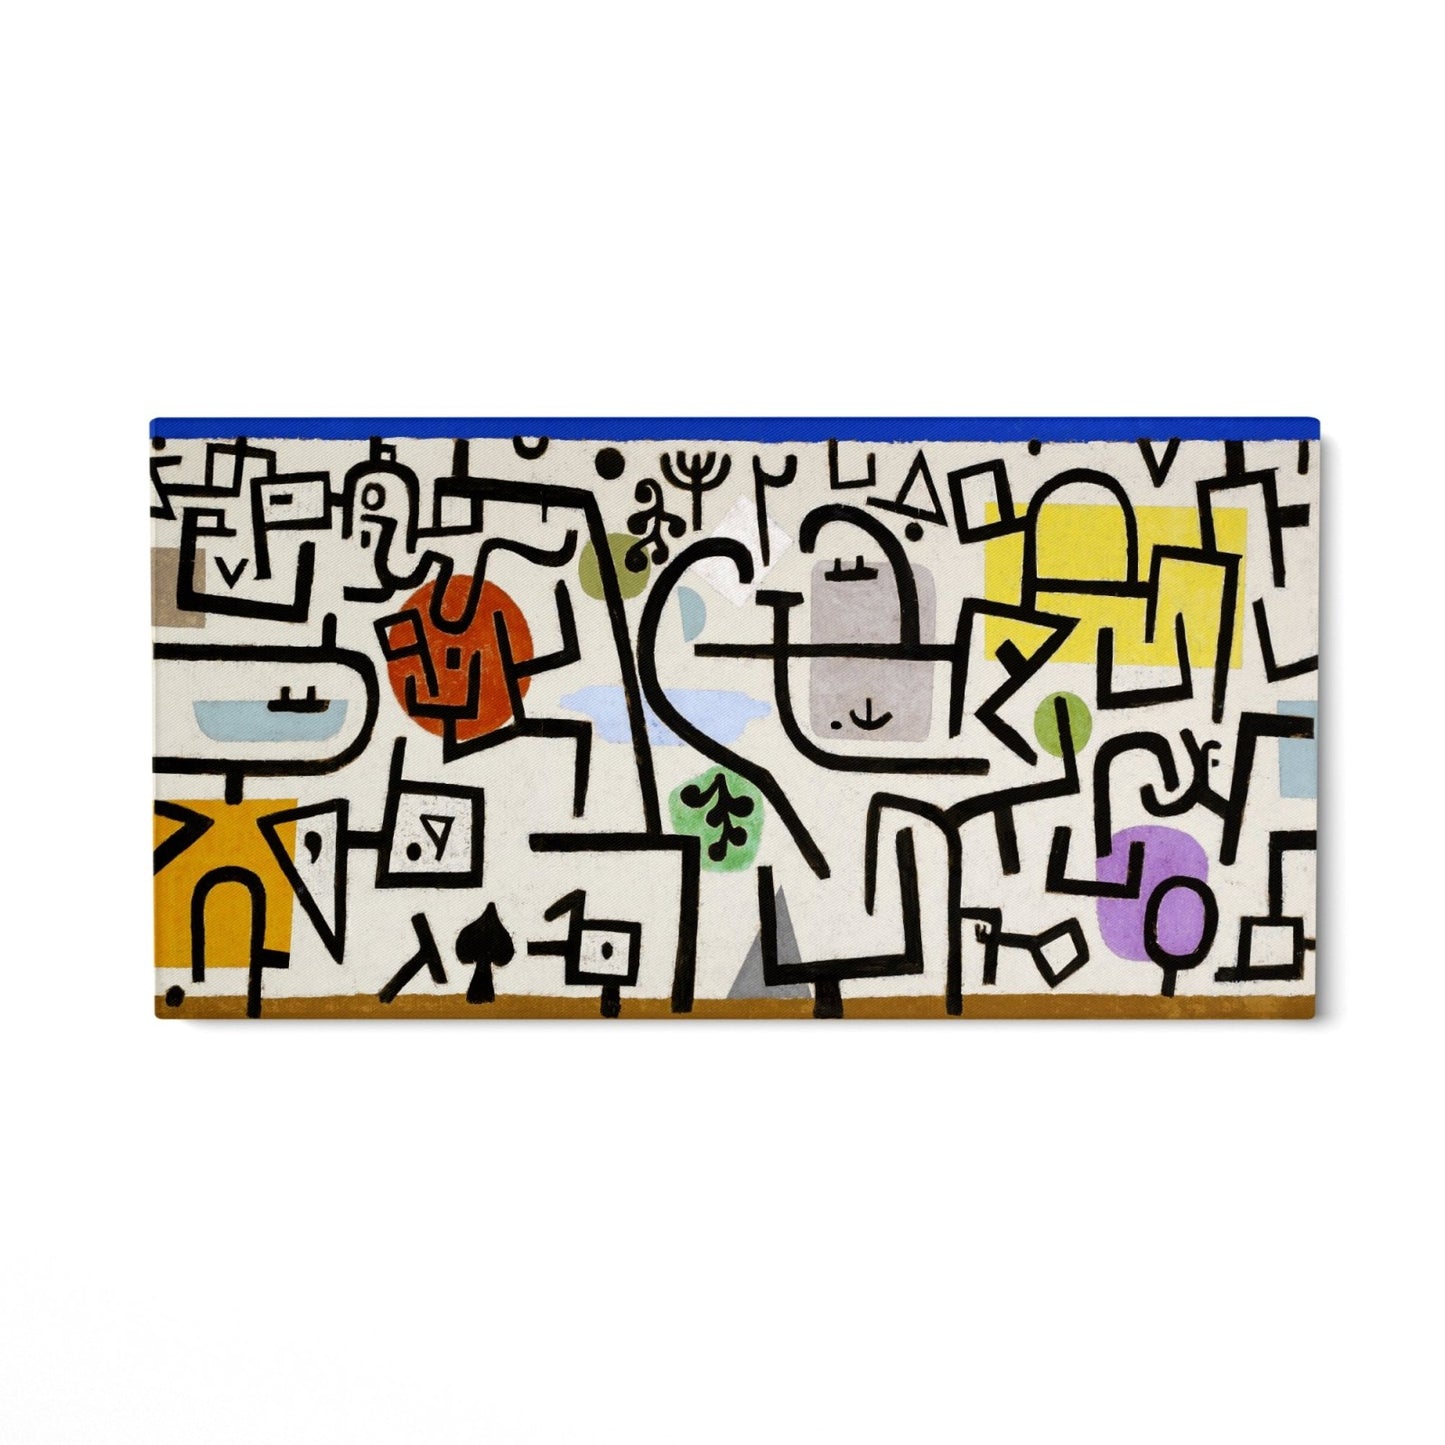 Paul Klee, Rich Port